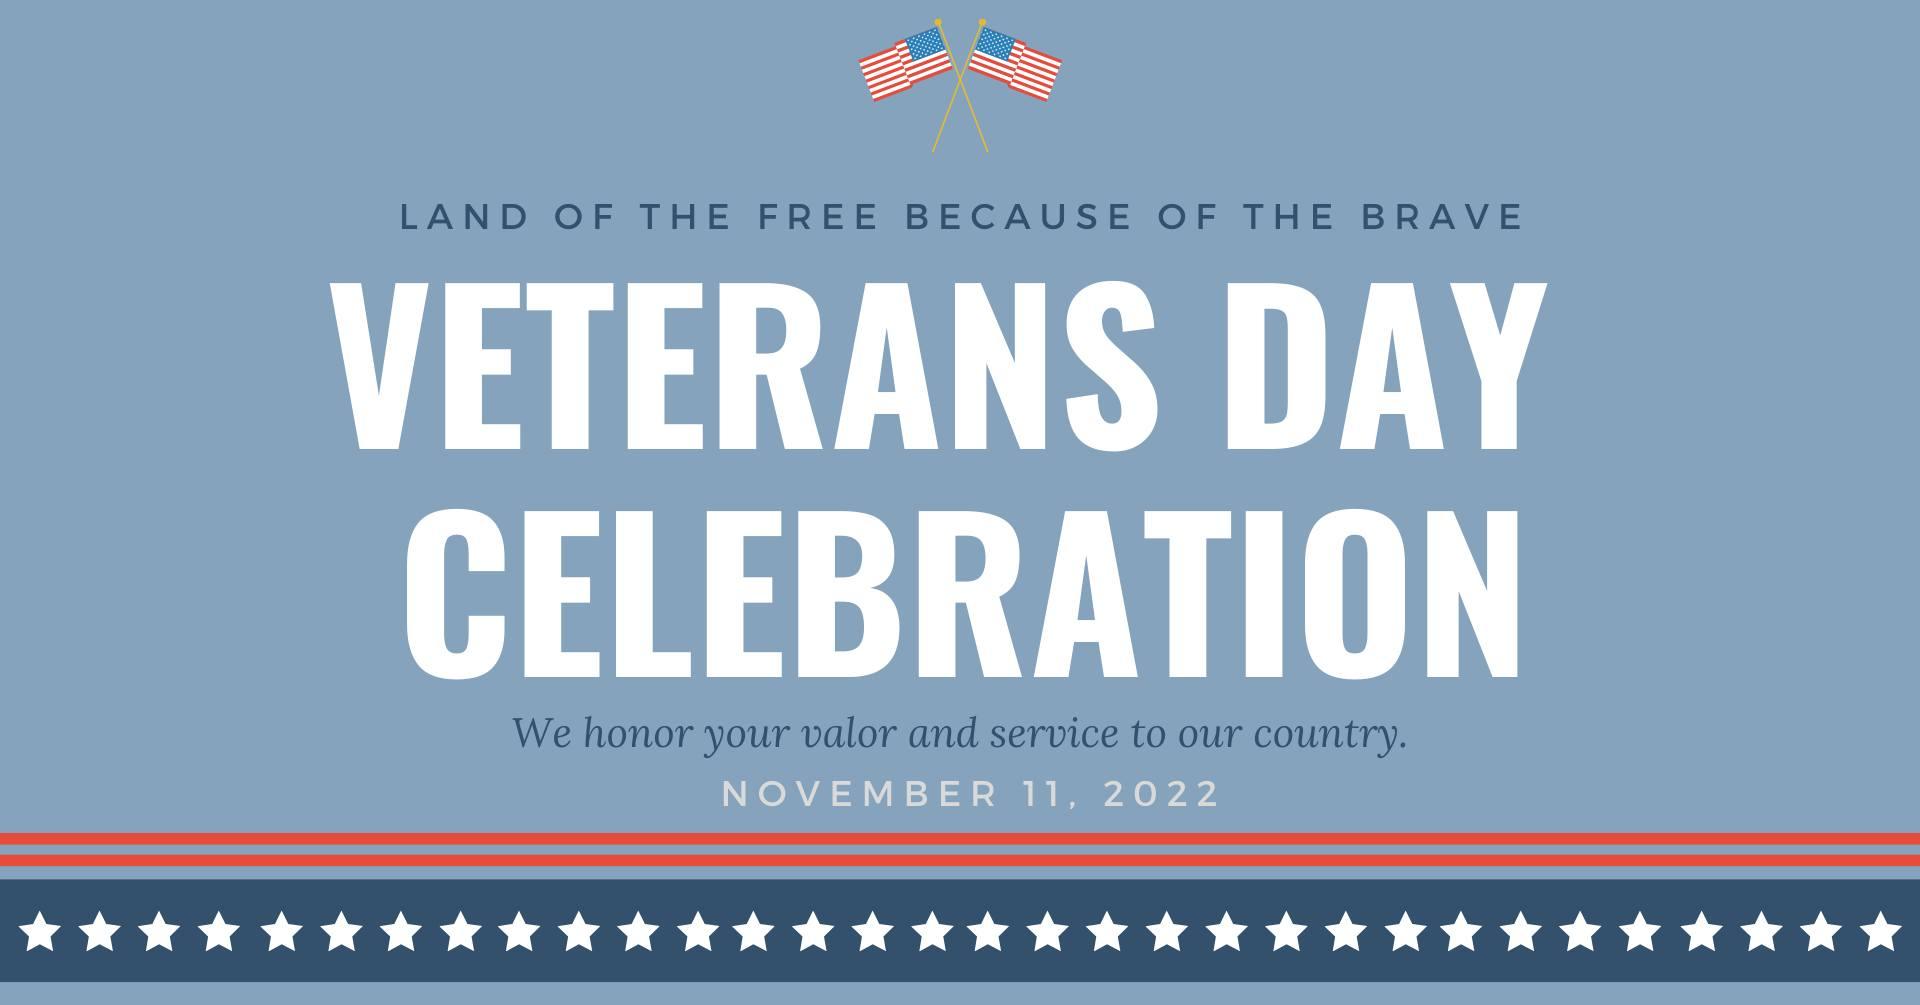 Veteran's Day Celebration
Fri Nov 11, 10:00 AM - Fri Nov 11, 11:00 AM
in 22 days